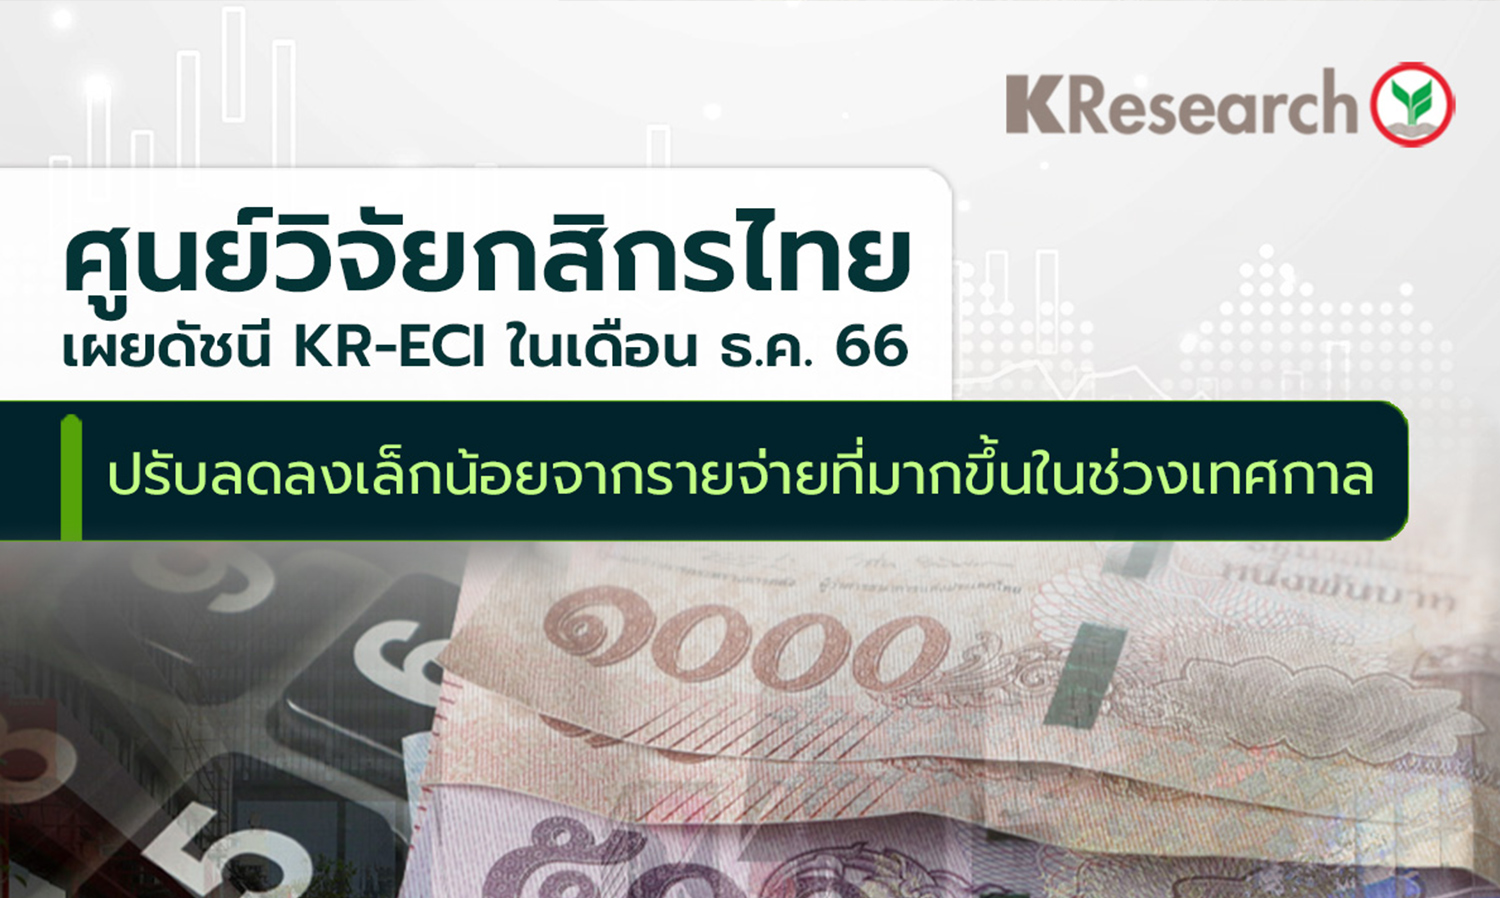 ศูนย์วิจัยกสิกรไทยเผยดัชนี KR-ECI ในเดือน ธ.ค.66 ปรับลดลงเล็กน้อยจากรายจ่ายที่มากขึ้นในช่วงเทศกาล